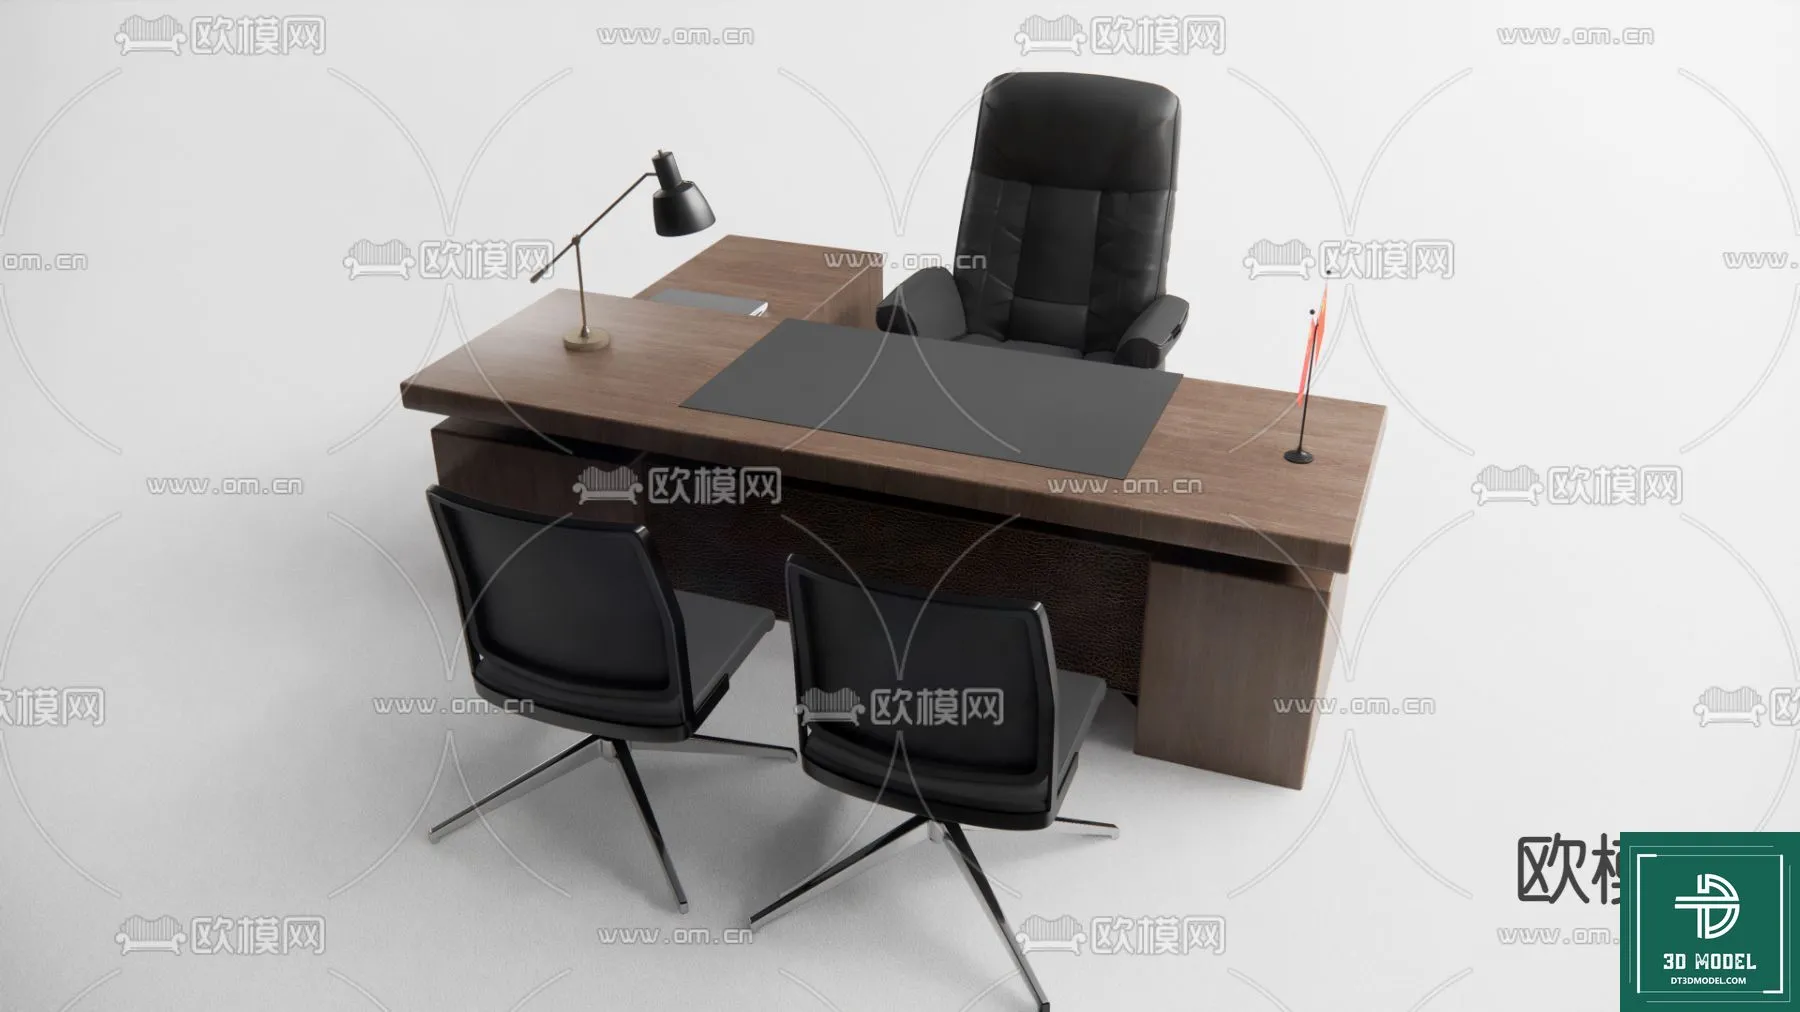 OFFICE TABLES – DESK 3DMODELS – 045